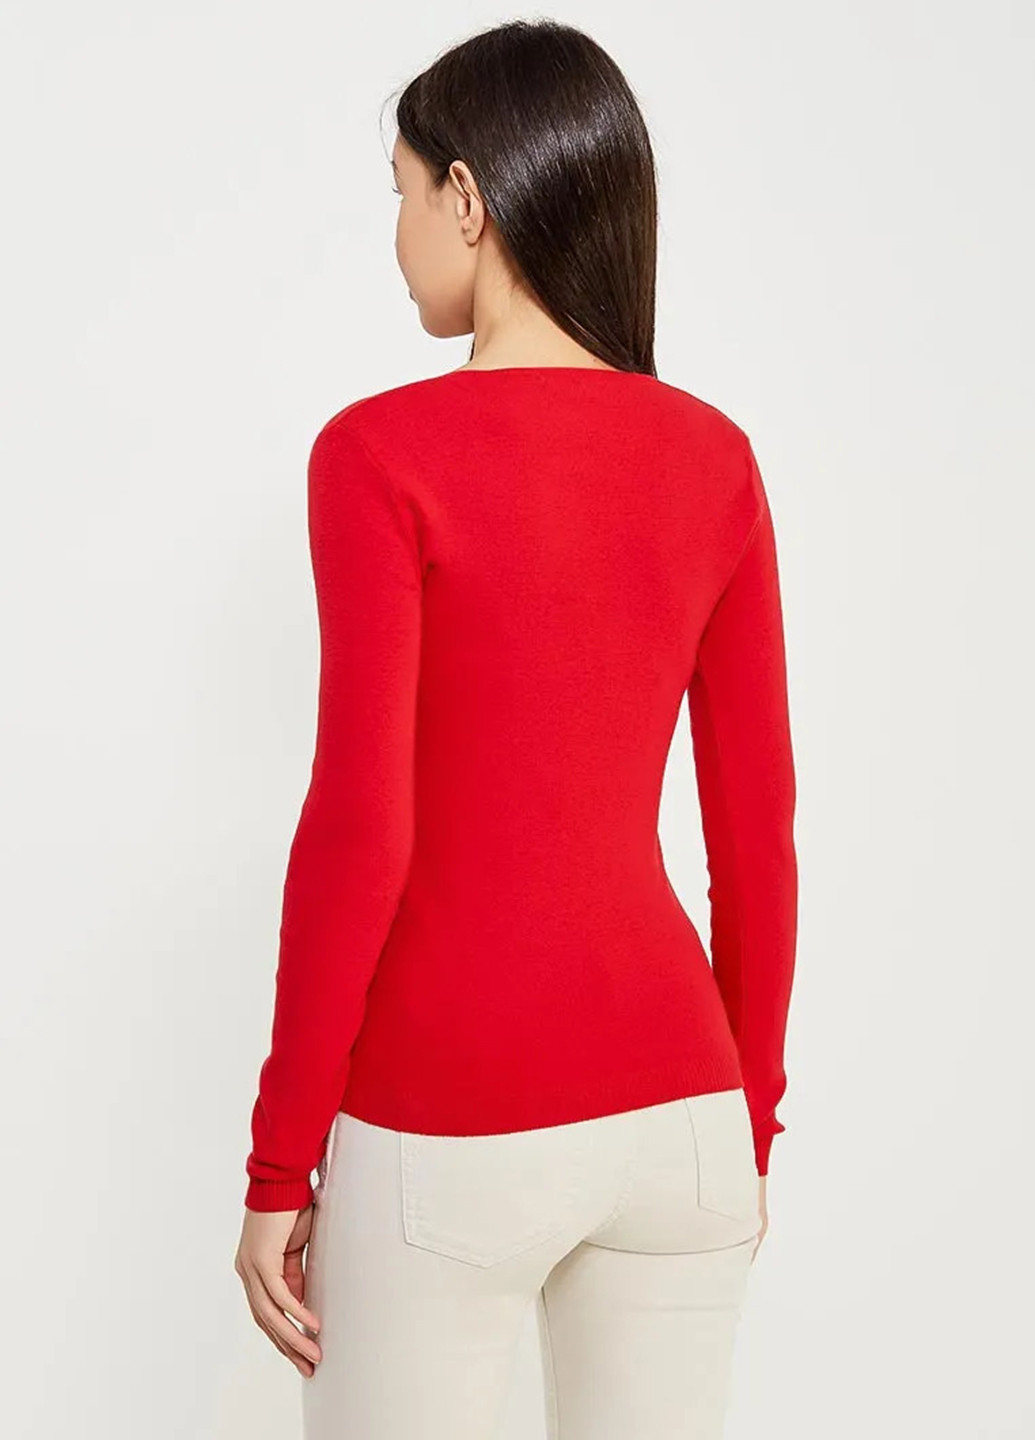 Красный демисезонный пуловер пуловер United Colors of Benetton